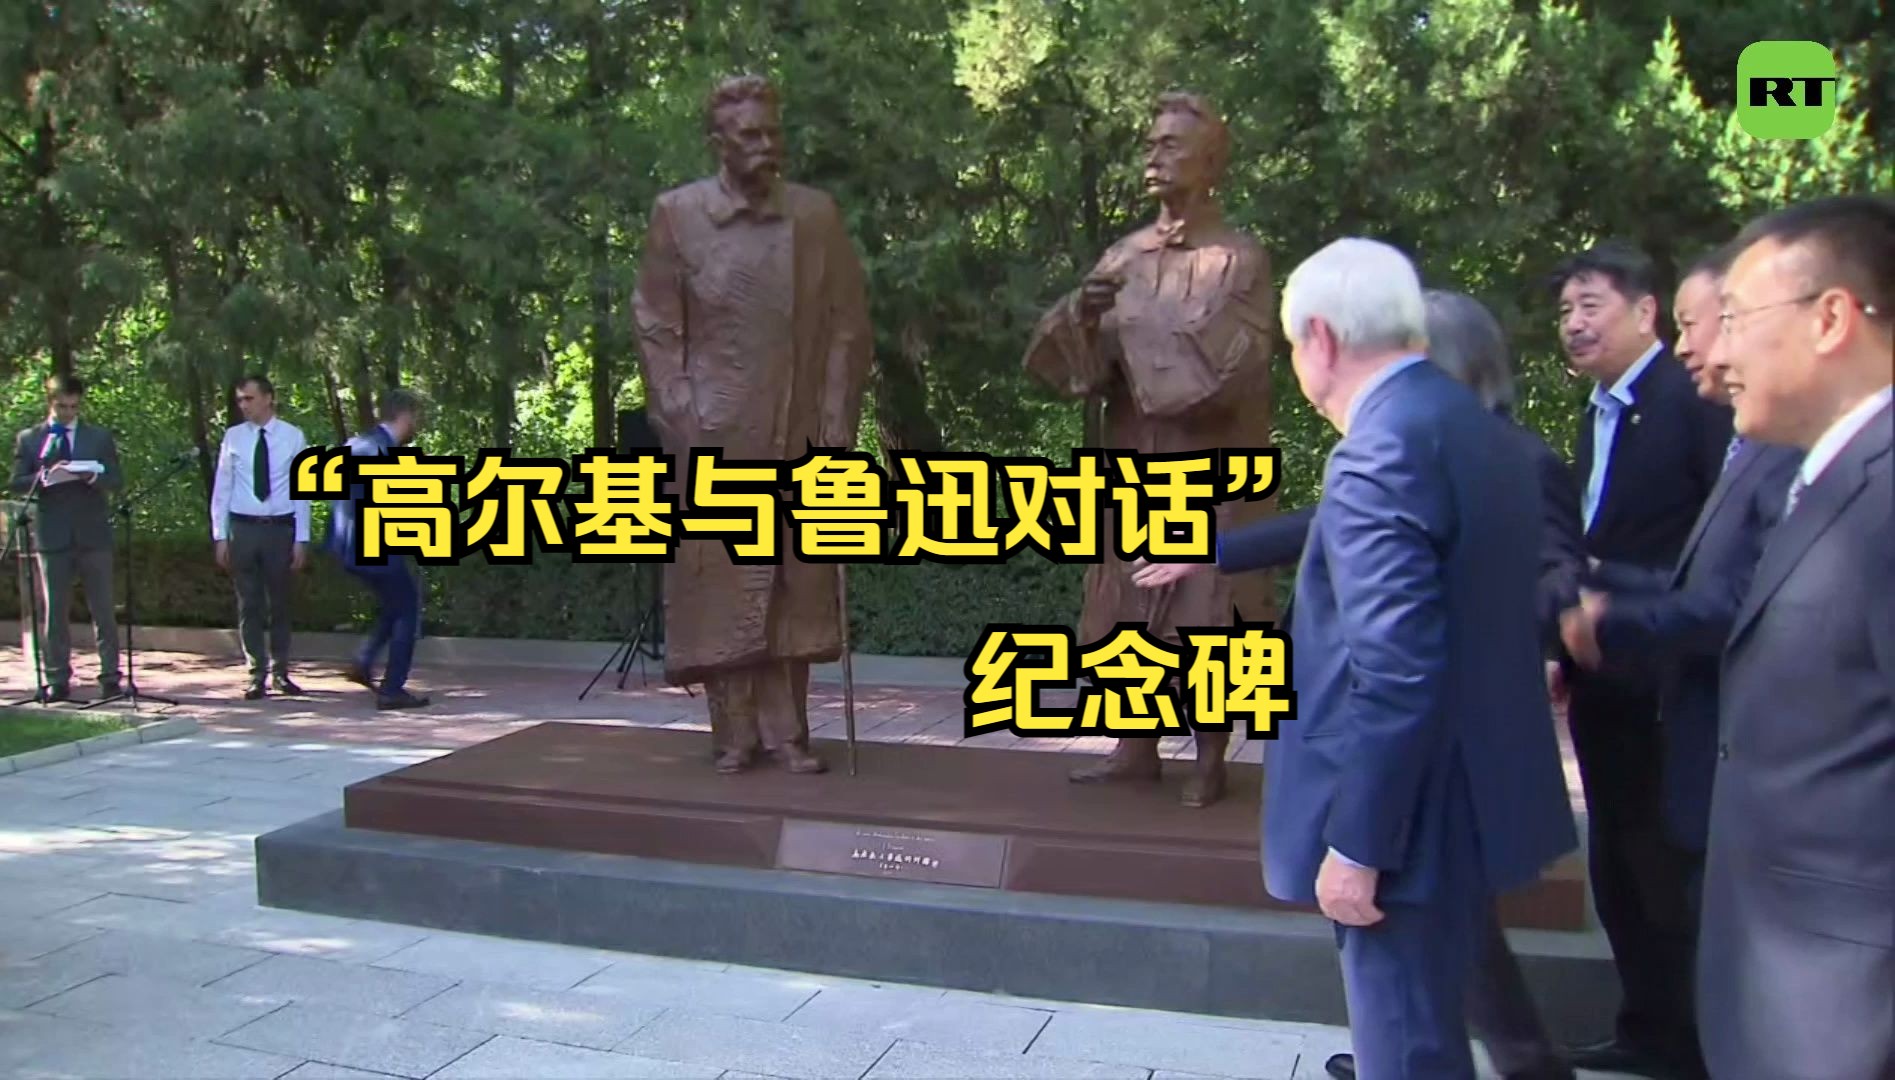 “高尔基与鲁迅对话”纪念碑揭幕仪式在俄驻华大使馆举行